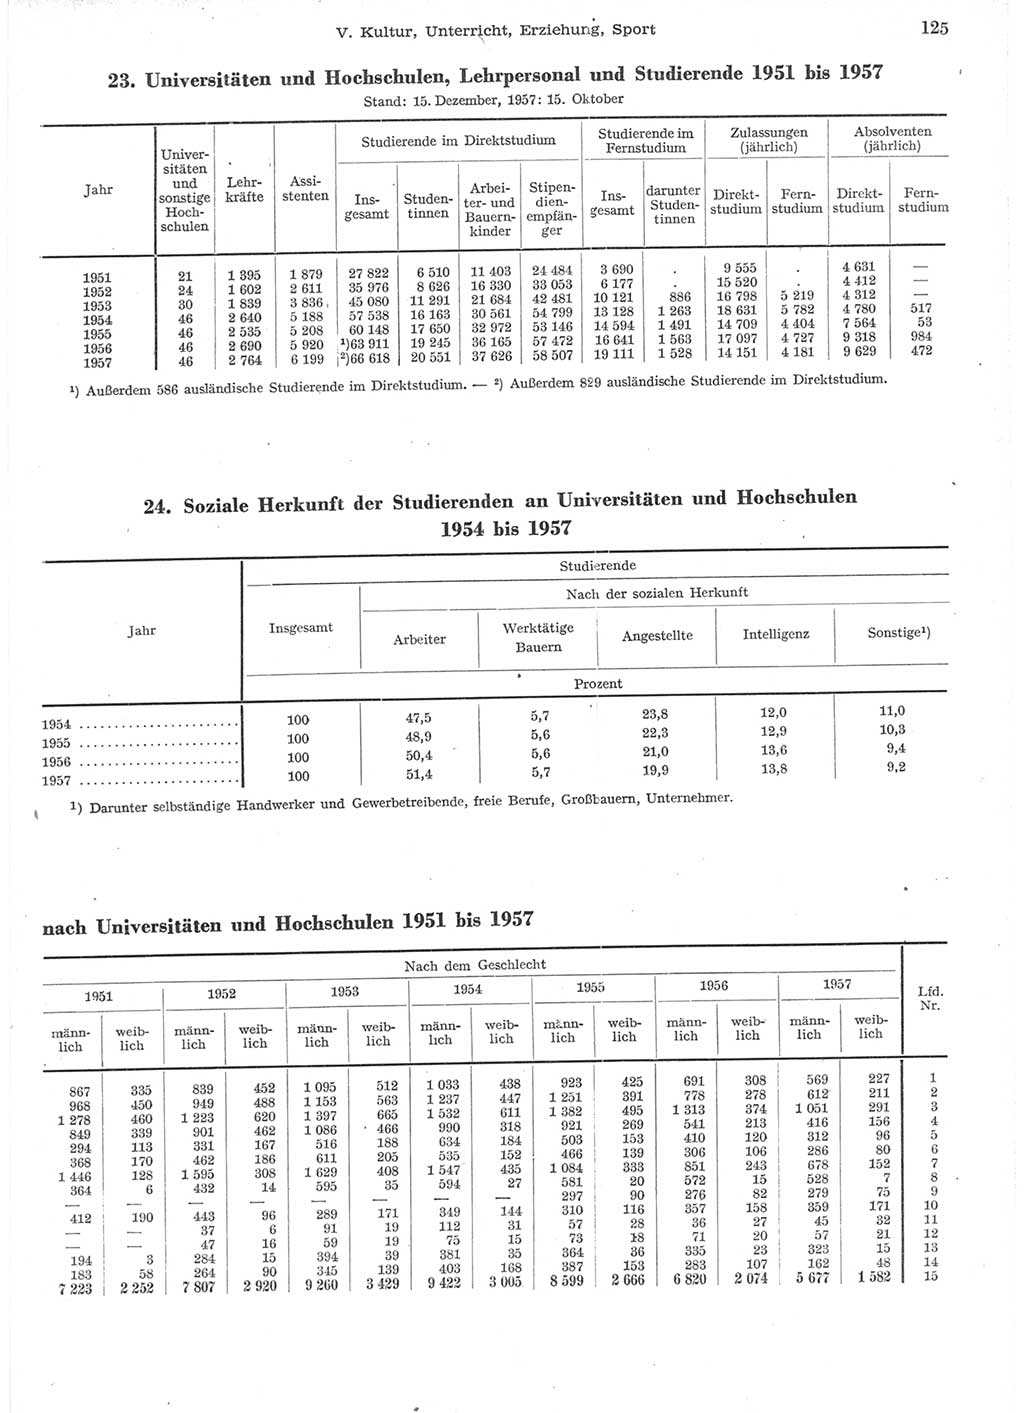 Statistisches Jahrbuch der Deutschen Demokratischen Republik (DDR) 1957, Seite 125 (Stat. Jb. DDR 1957, S. 125)